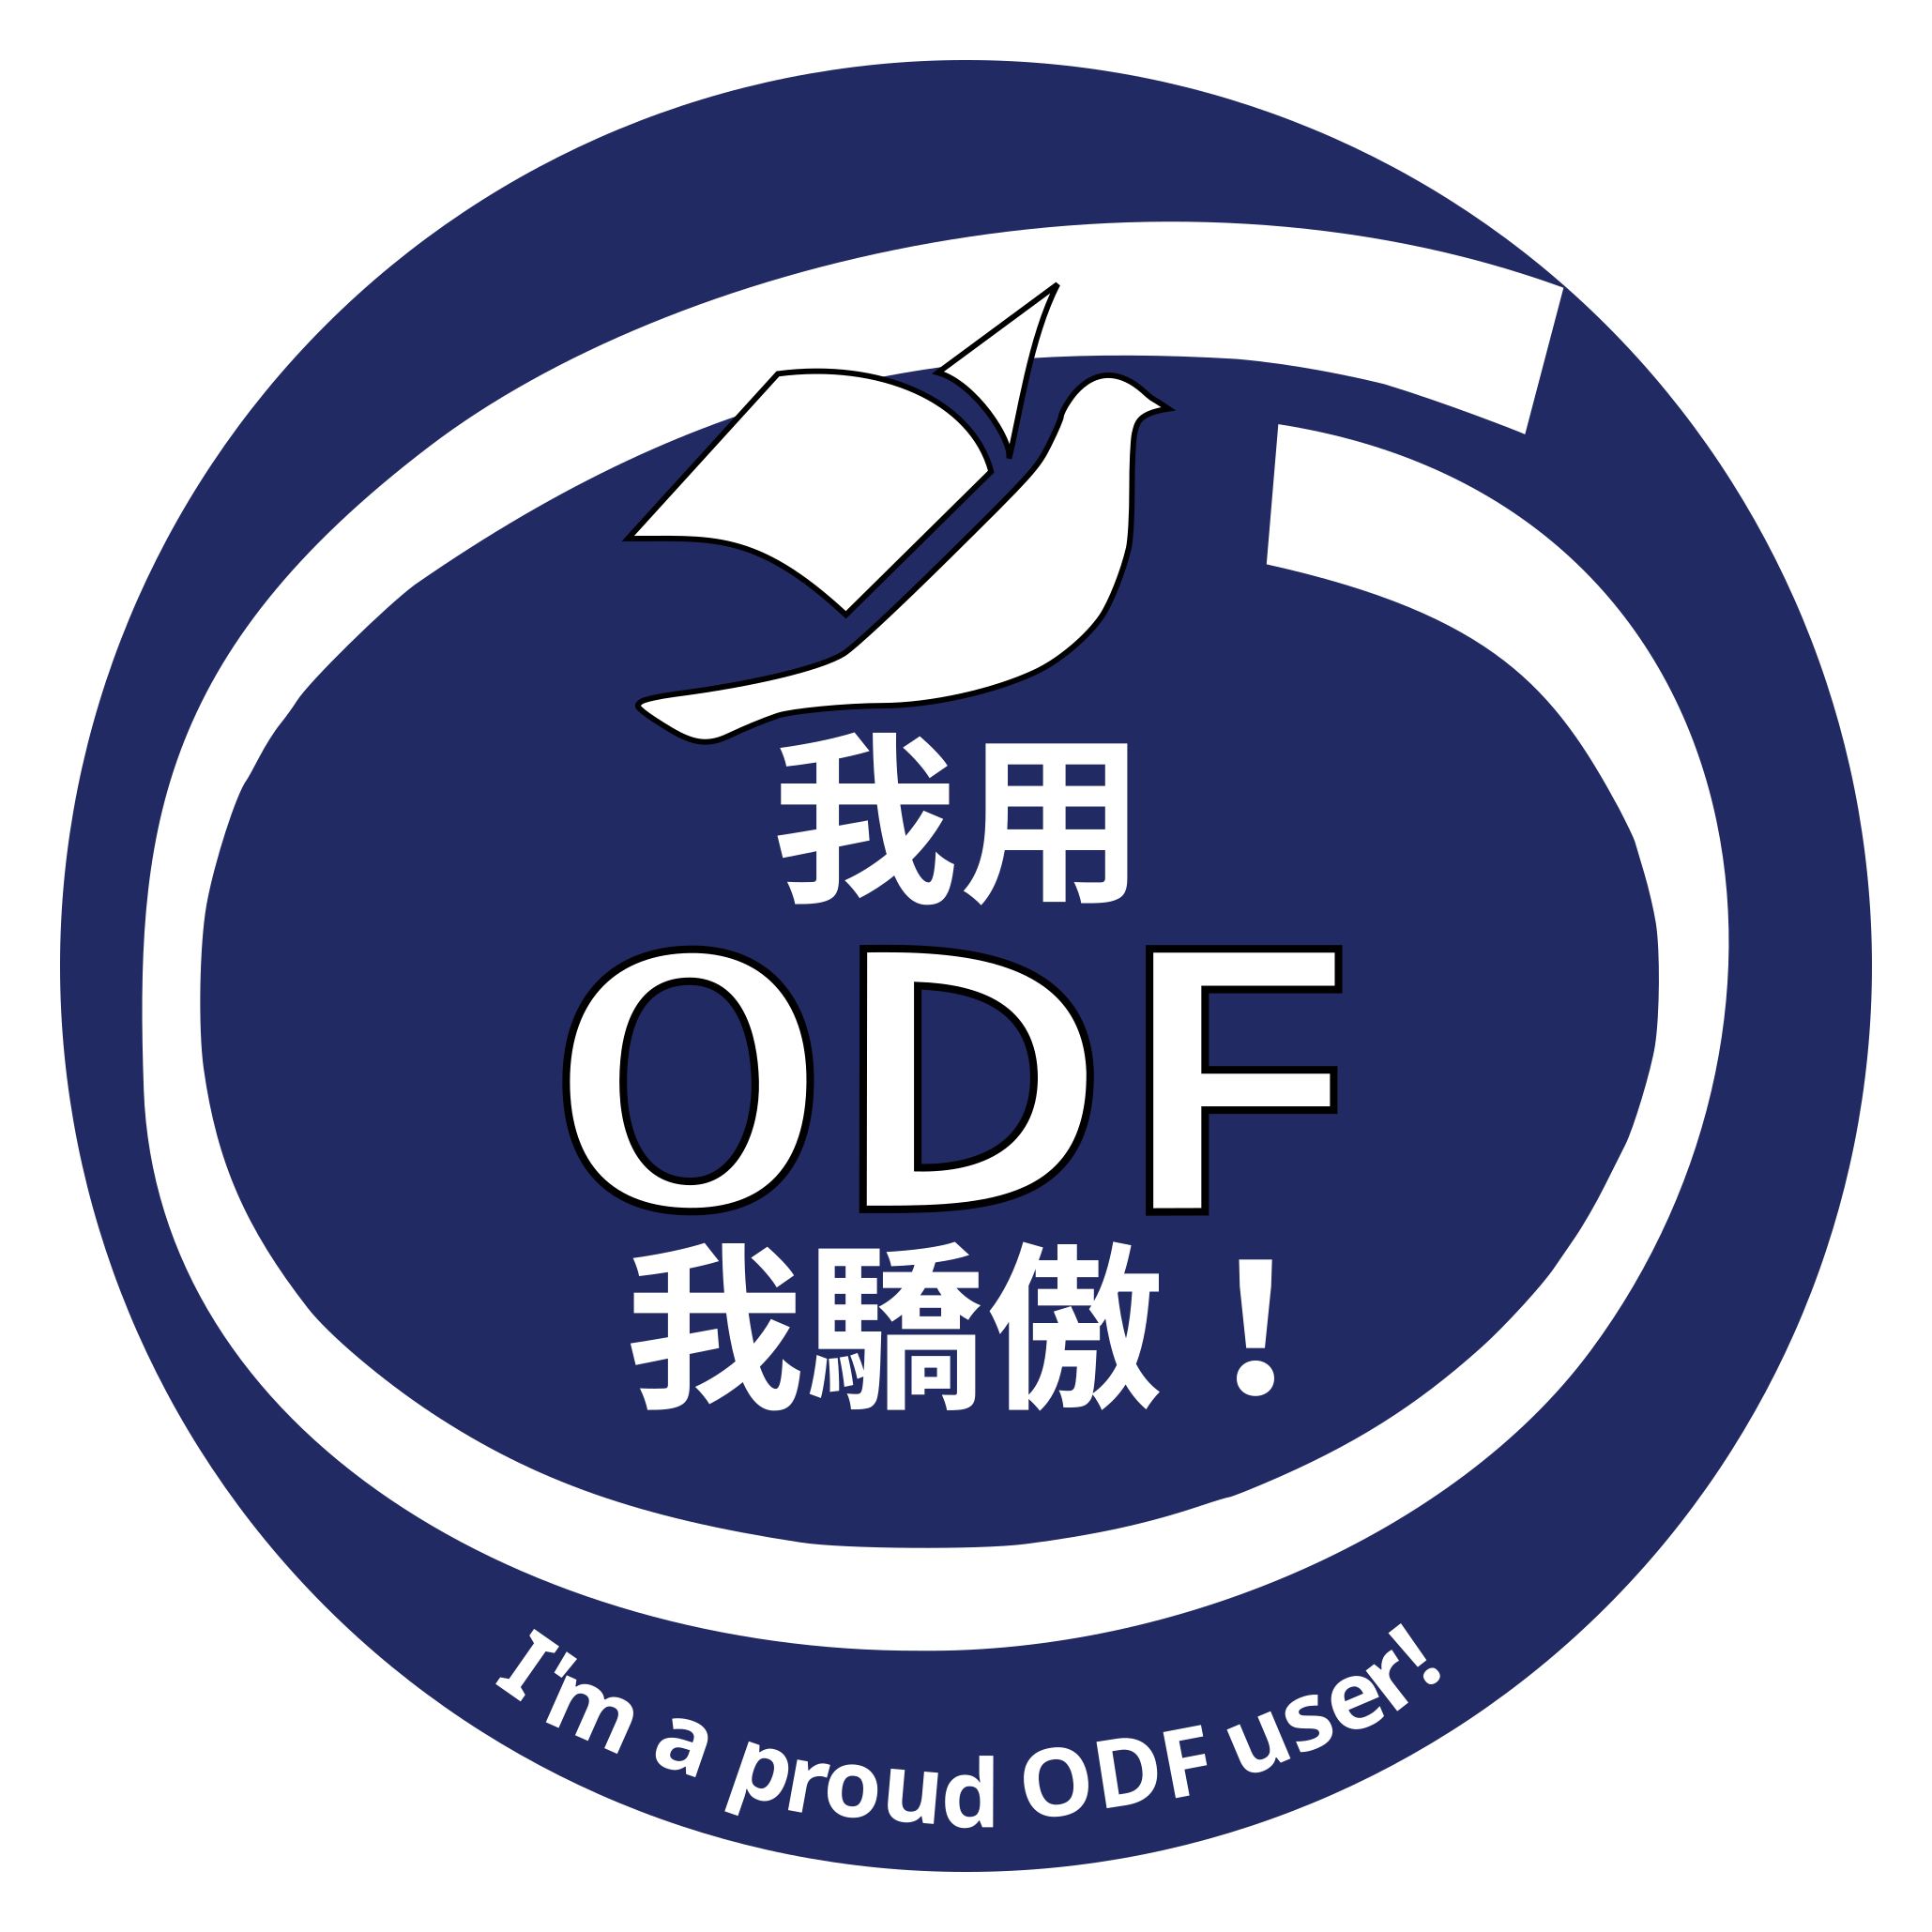 「我用 ODF 我驕傲」貼紙